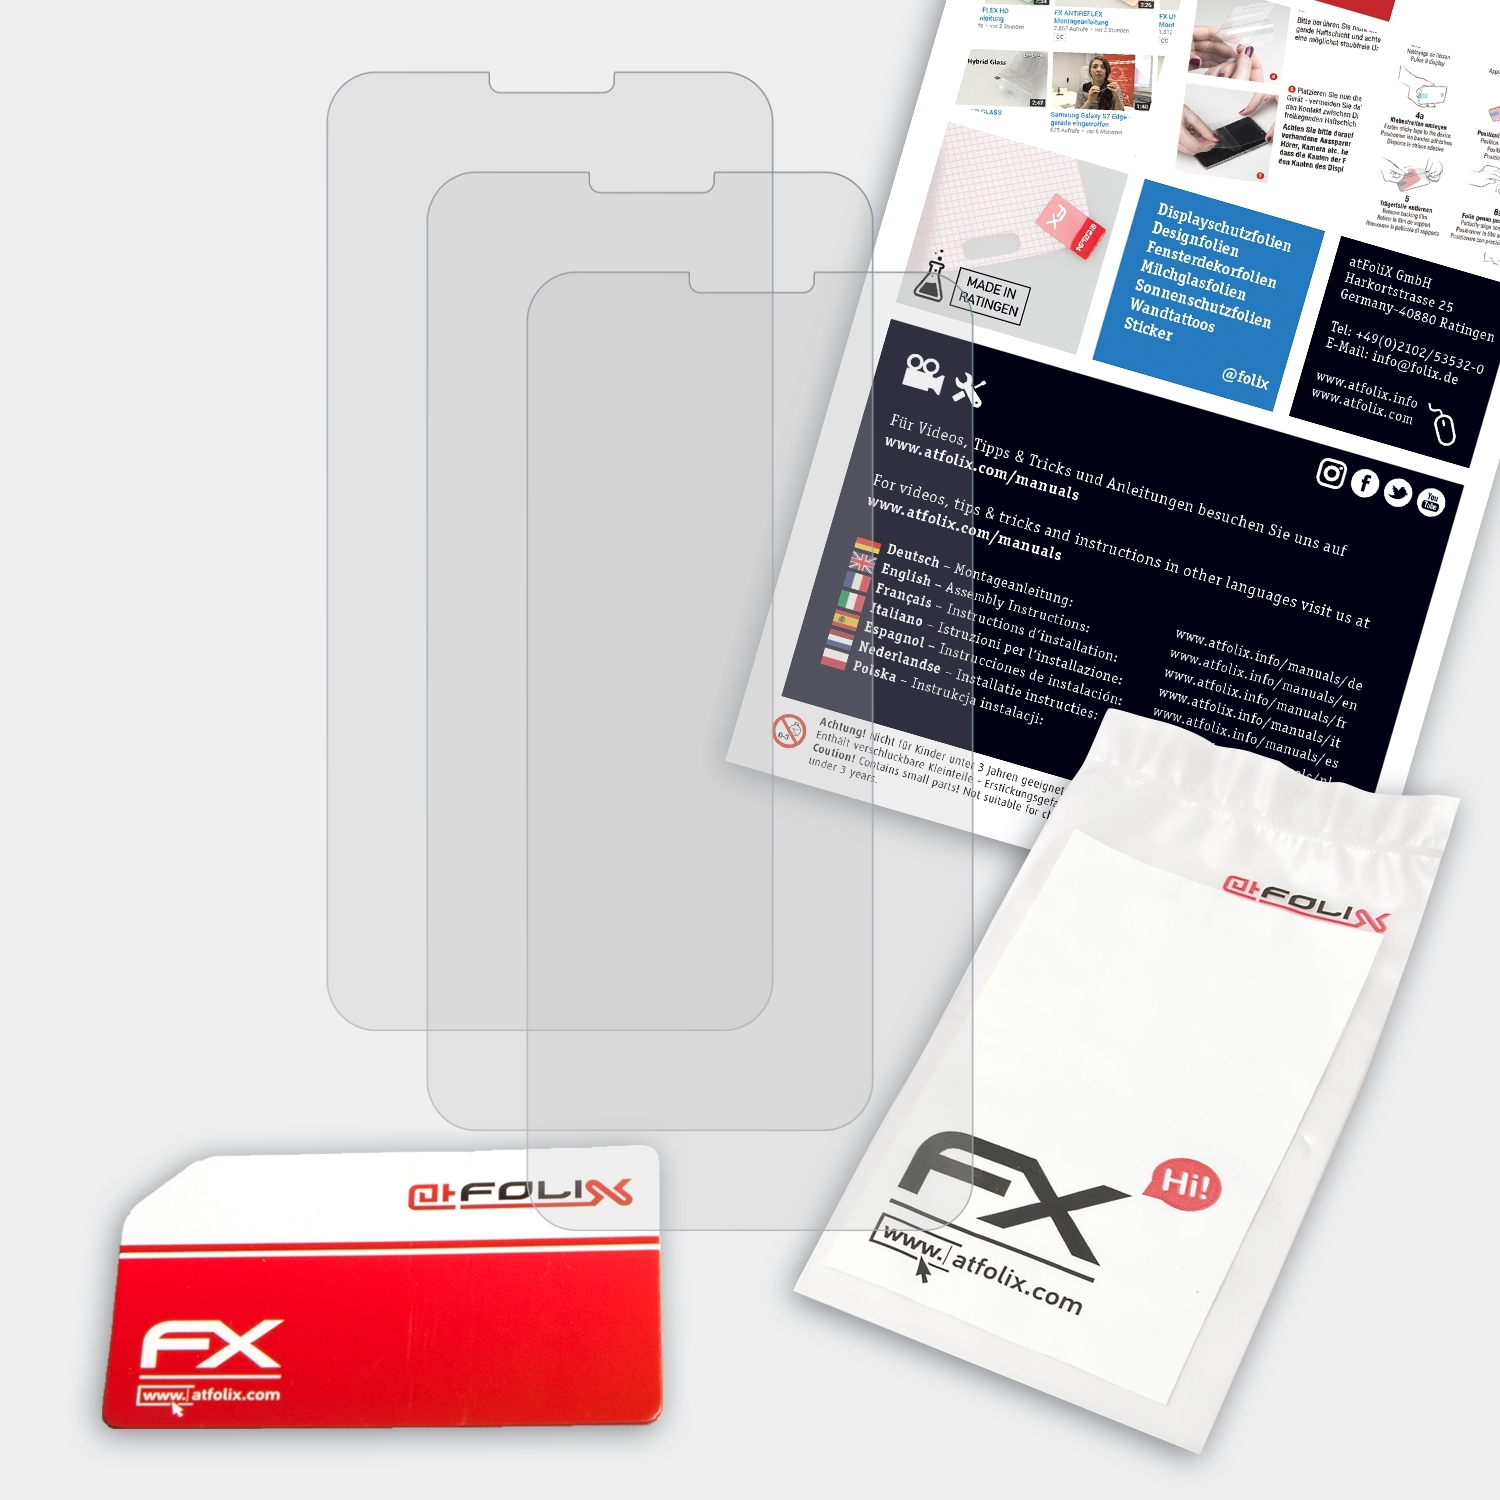 FX-Antireflex Vivo ATFOLIX Displayschutz(für Y81s) 3x